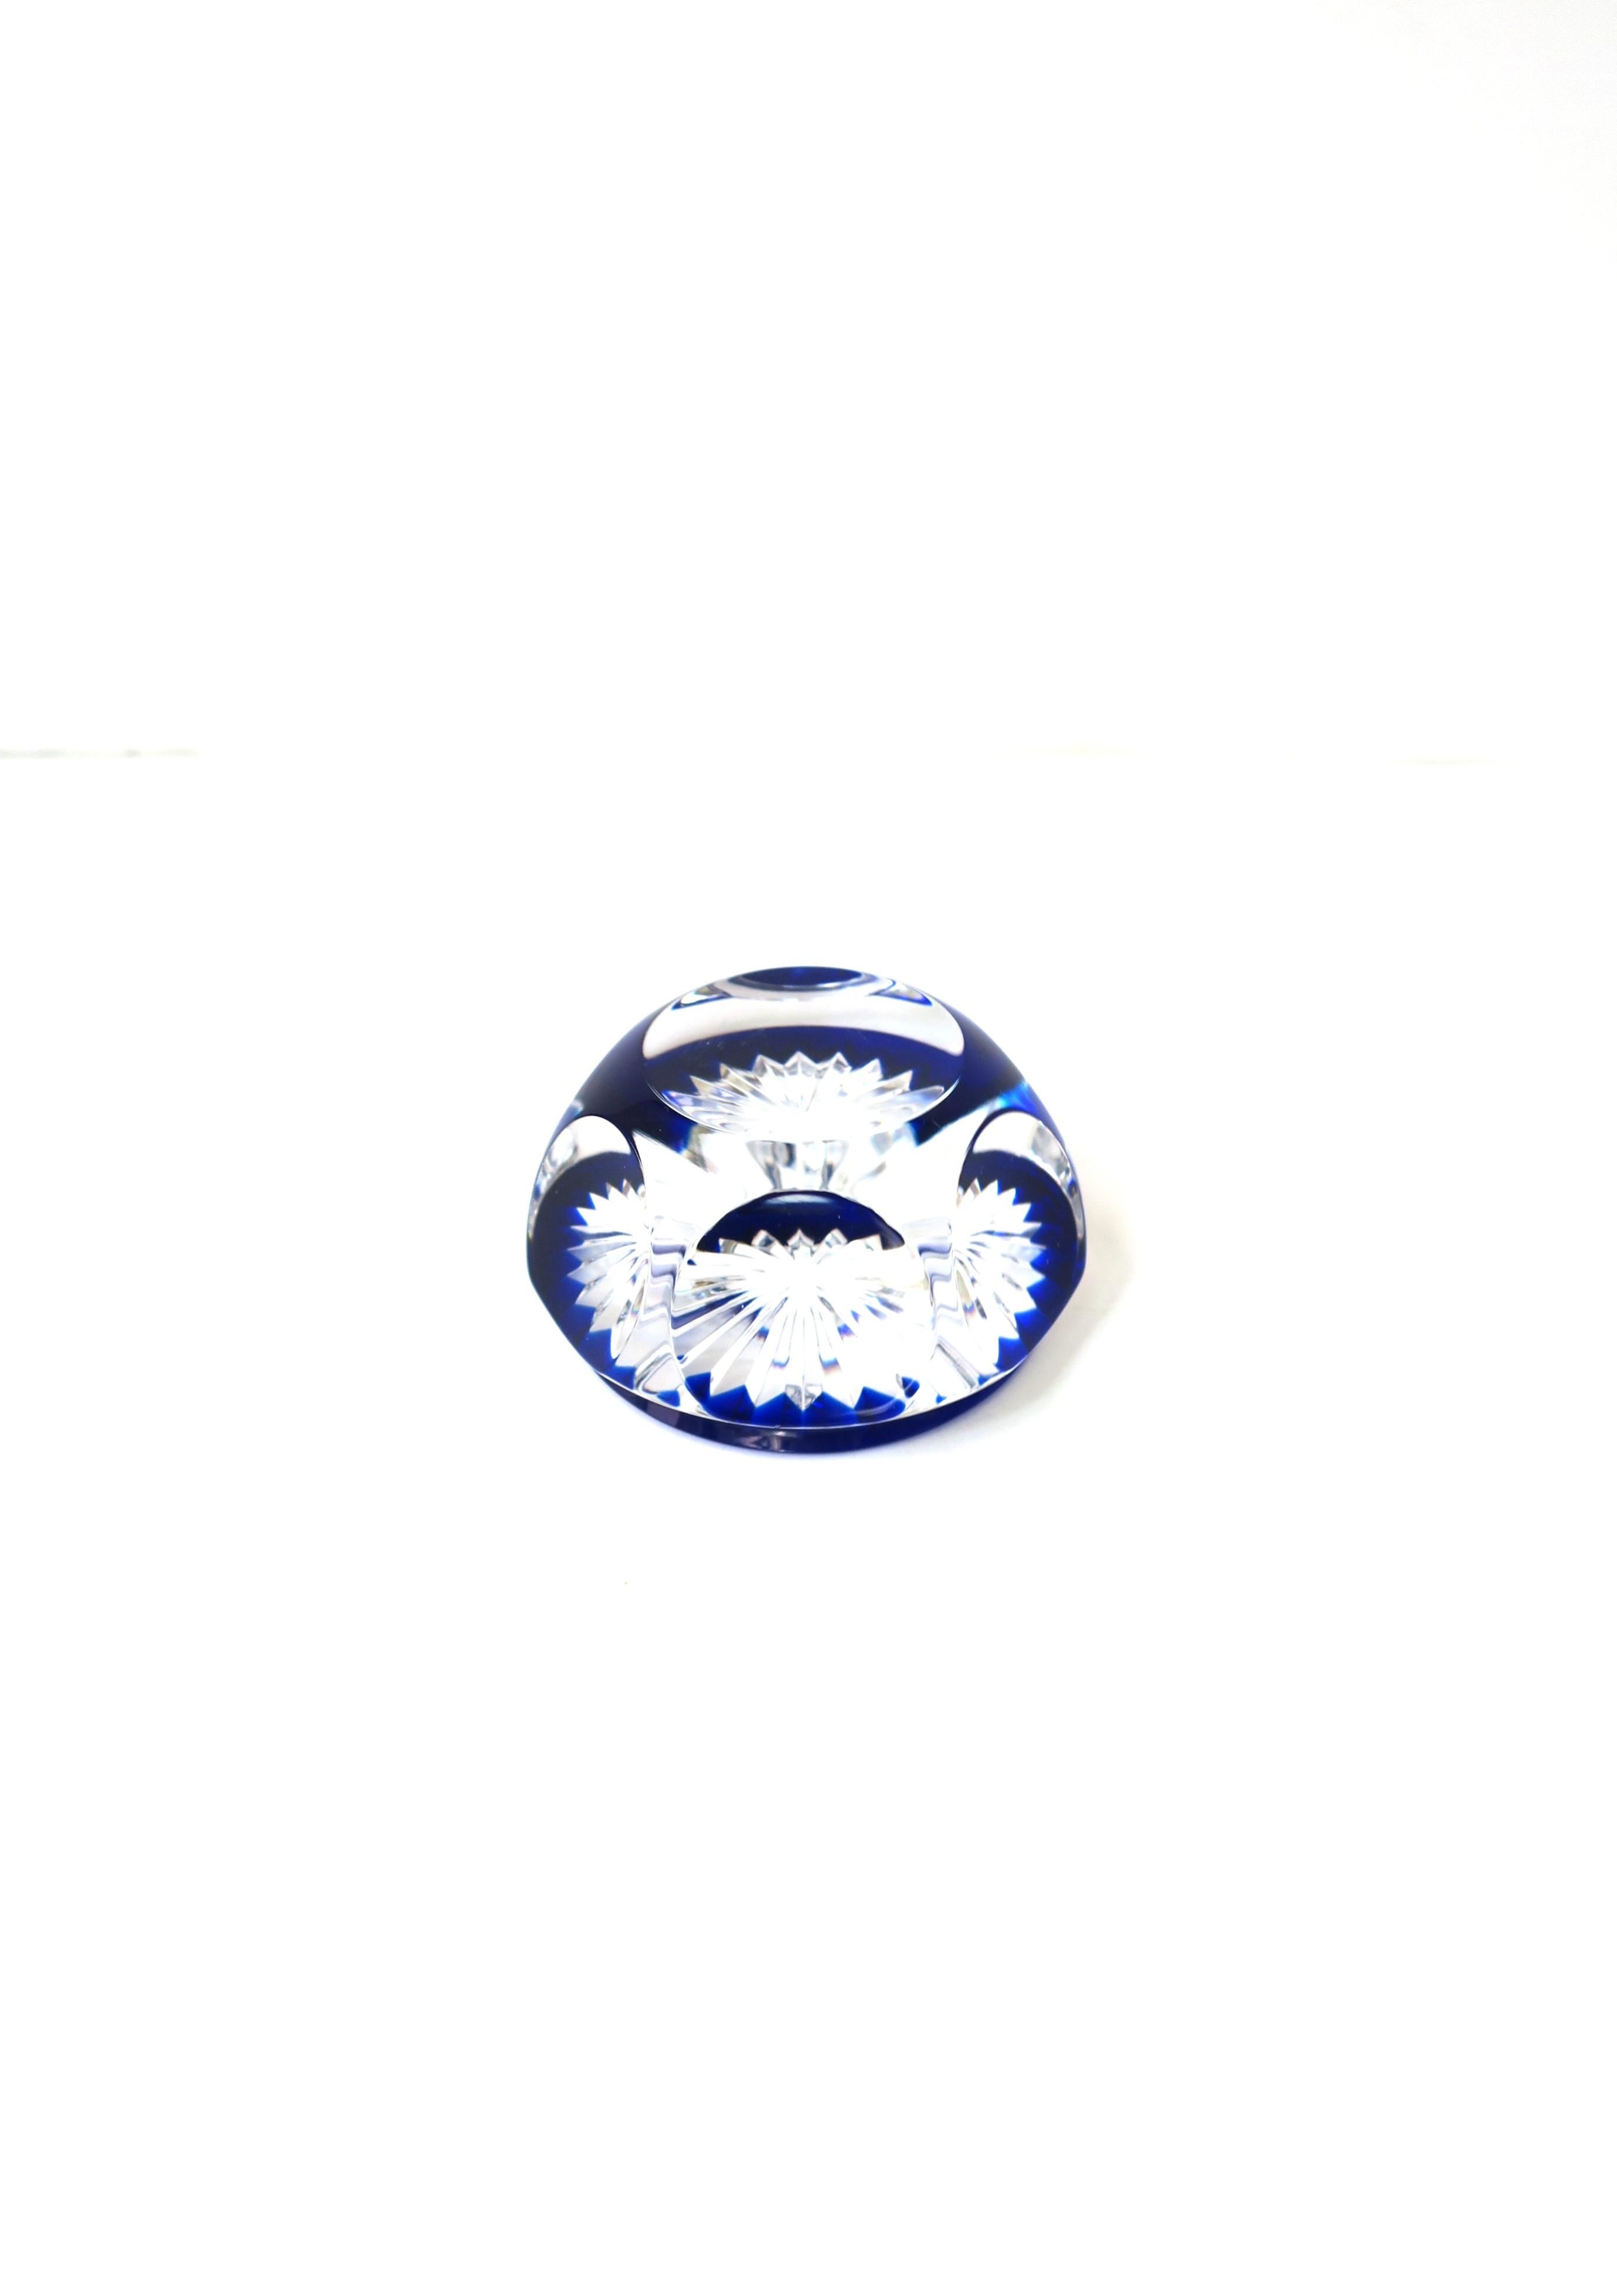 Magnifique presse-papier français à multiples facettes en bleu saphir et cristal clair de la luxueuse Maison Baccarat, vers la fin du XXe siècle, France. Ce presse-papier en cristal clair et bleu saphir, de forme hexagonale, présente six facettes